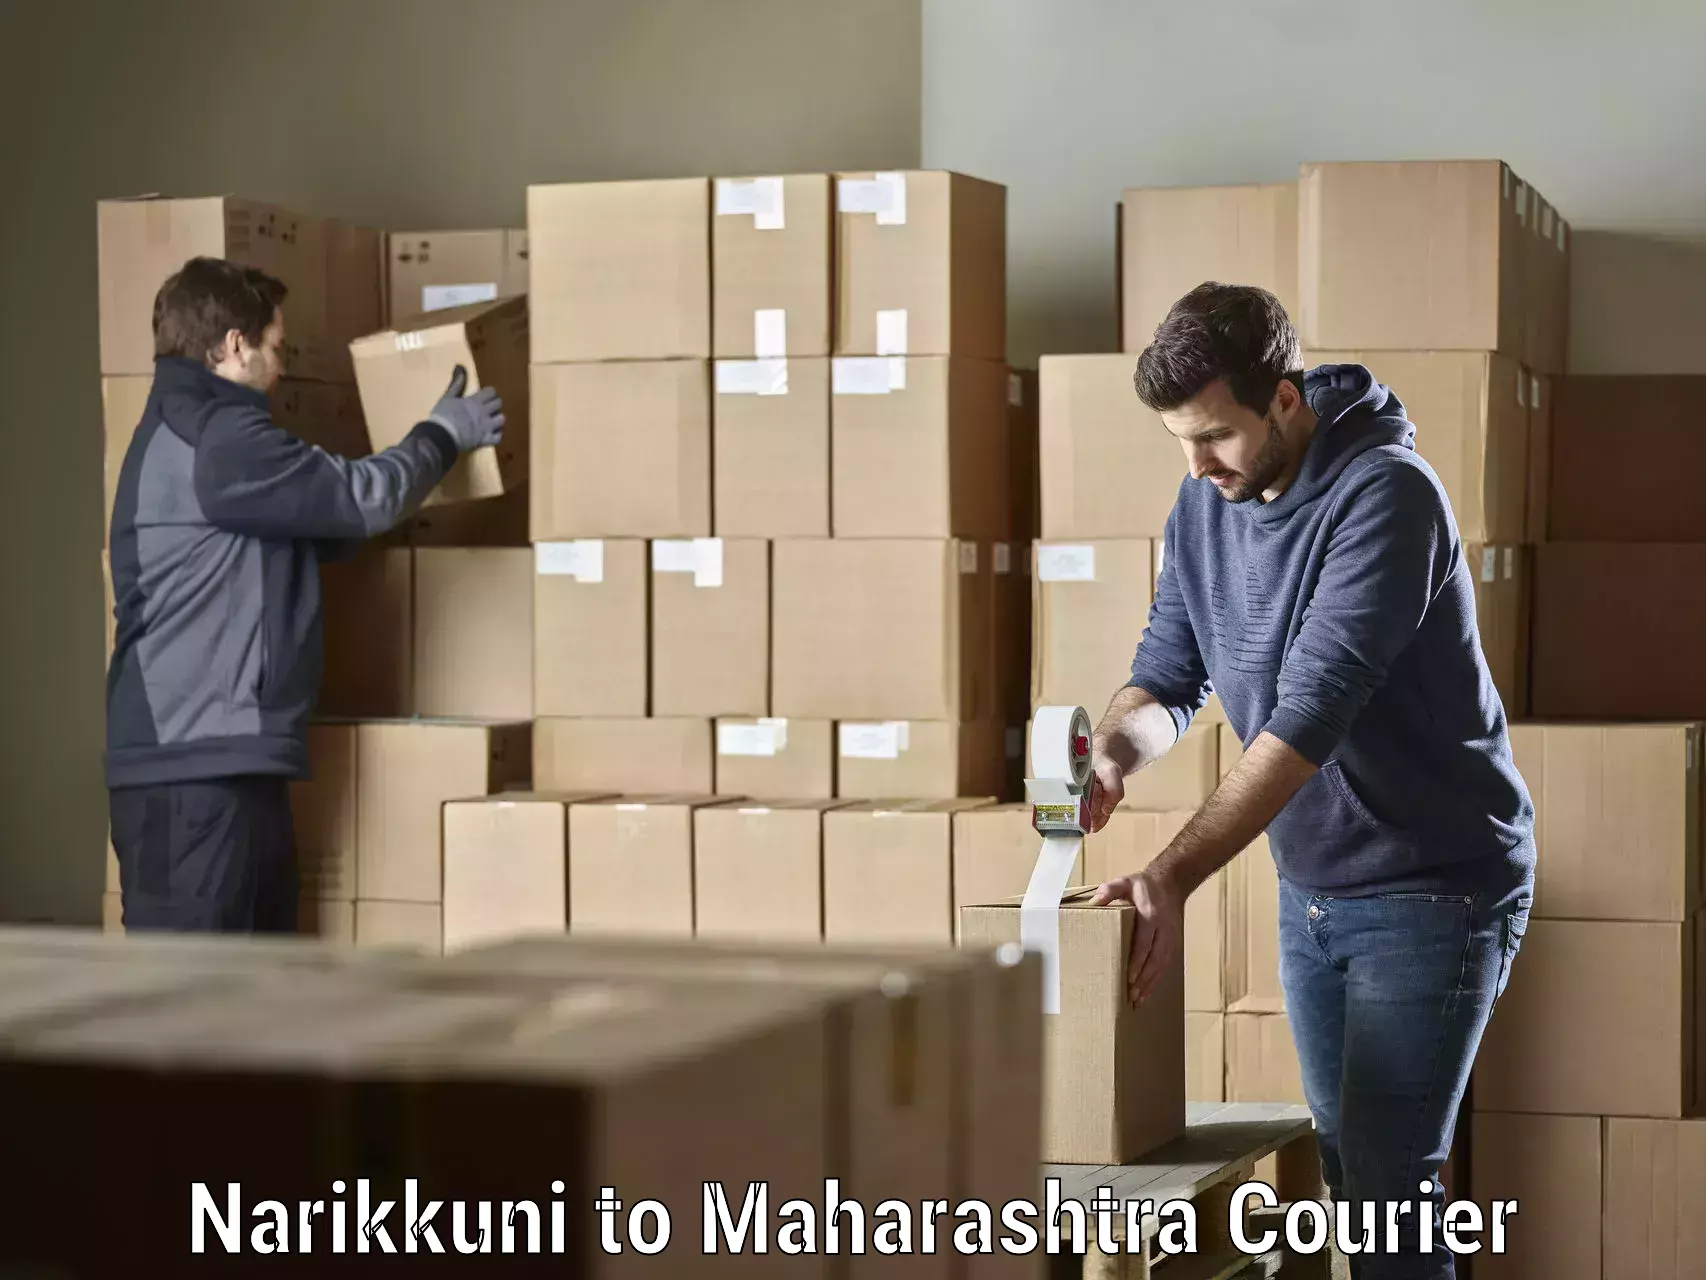 Reliable courier service Narikkuni to Maharashtra